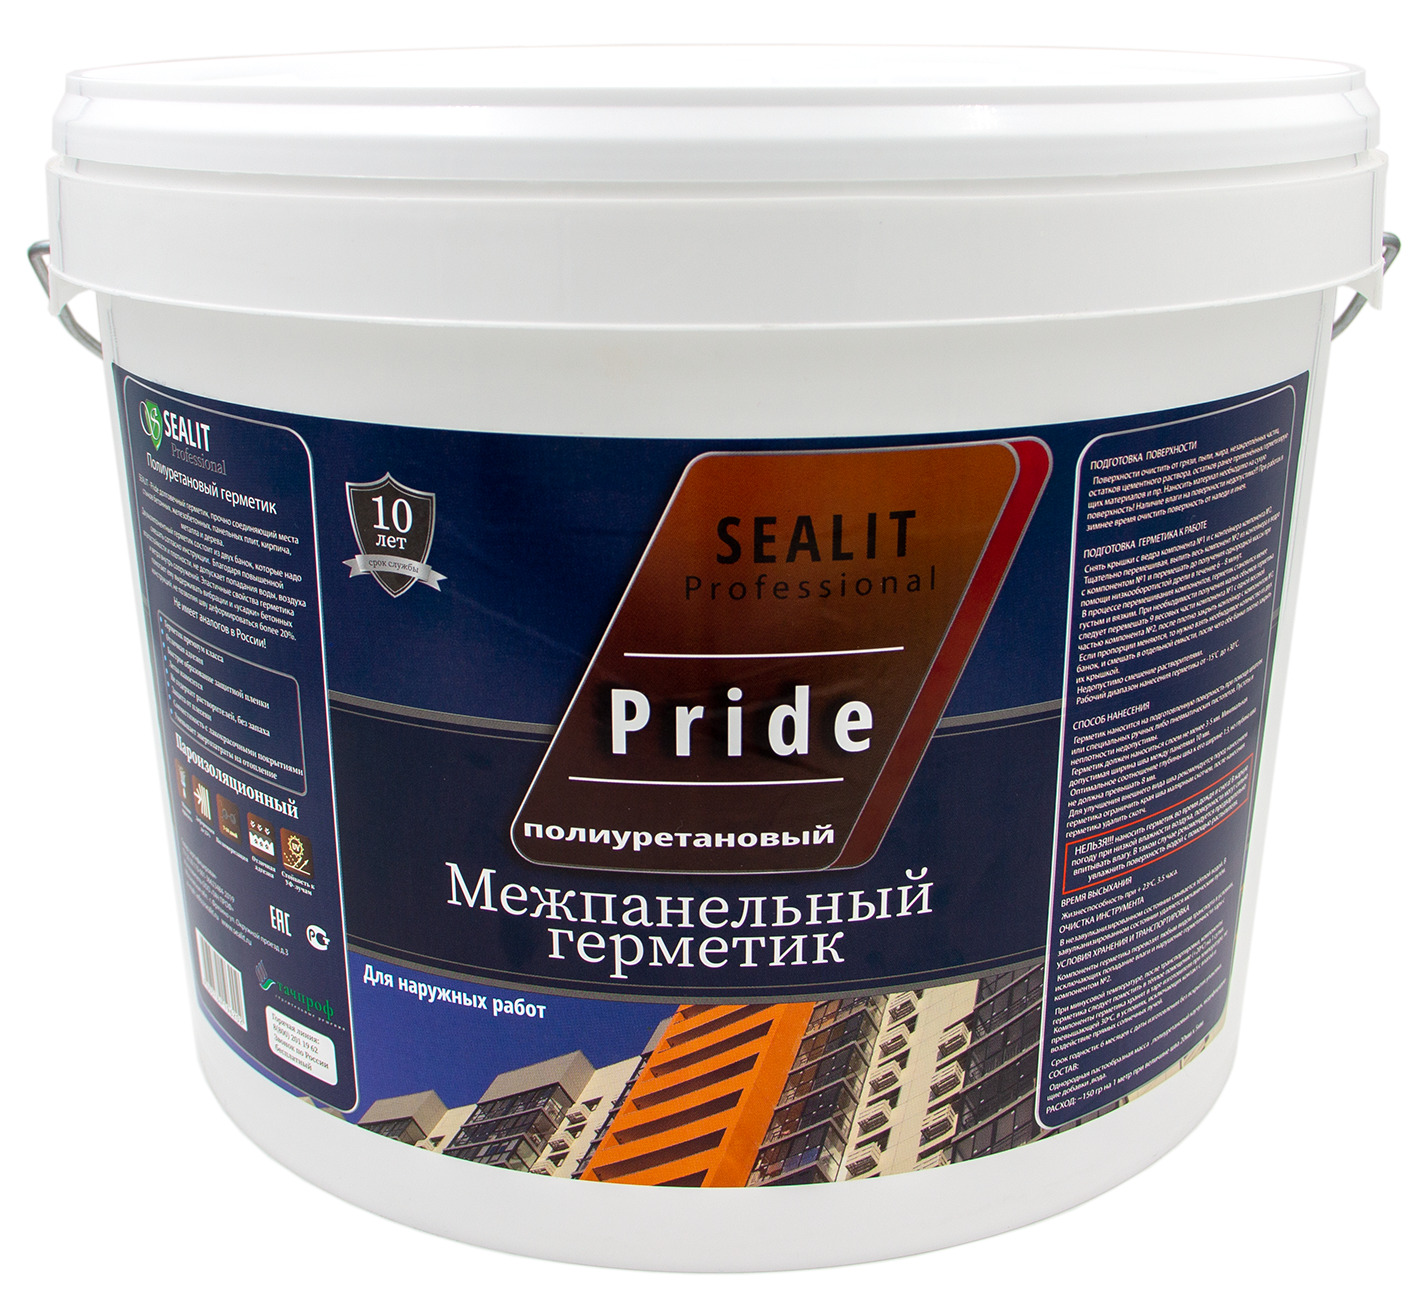 Двухкомпонентный герметик для межпанельных швов Sealit Pride 12,5 кг, серый герметик для межпанельных швов и бетона invamat белый 15 кг 1129